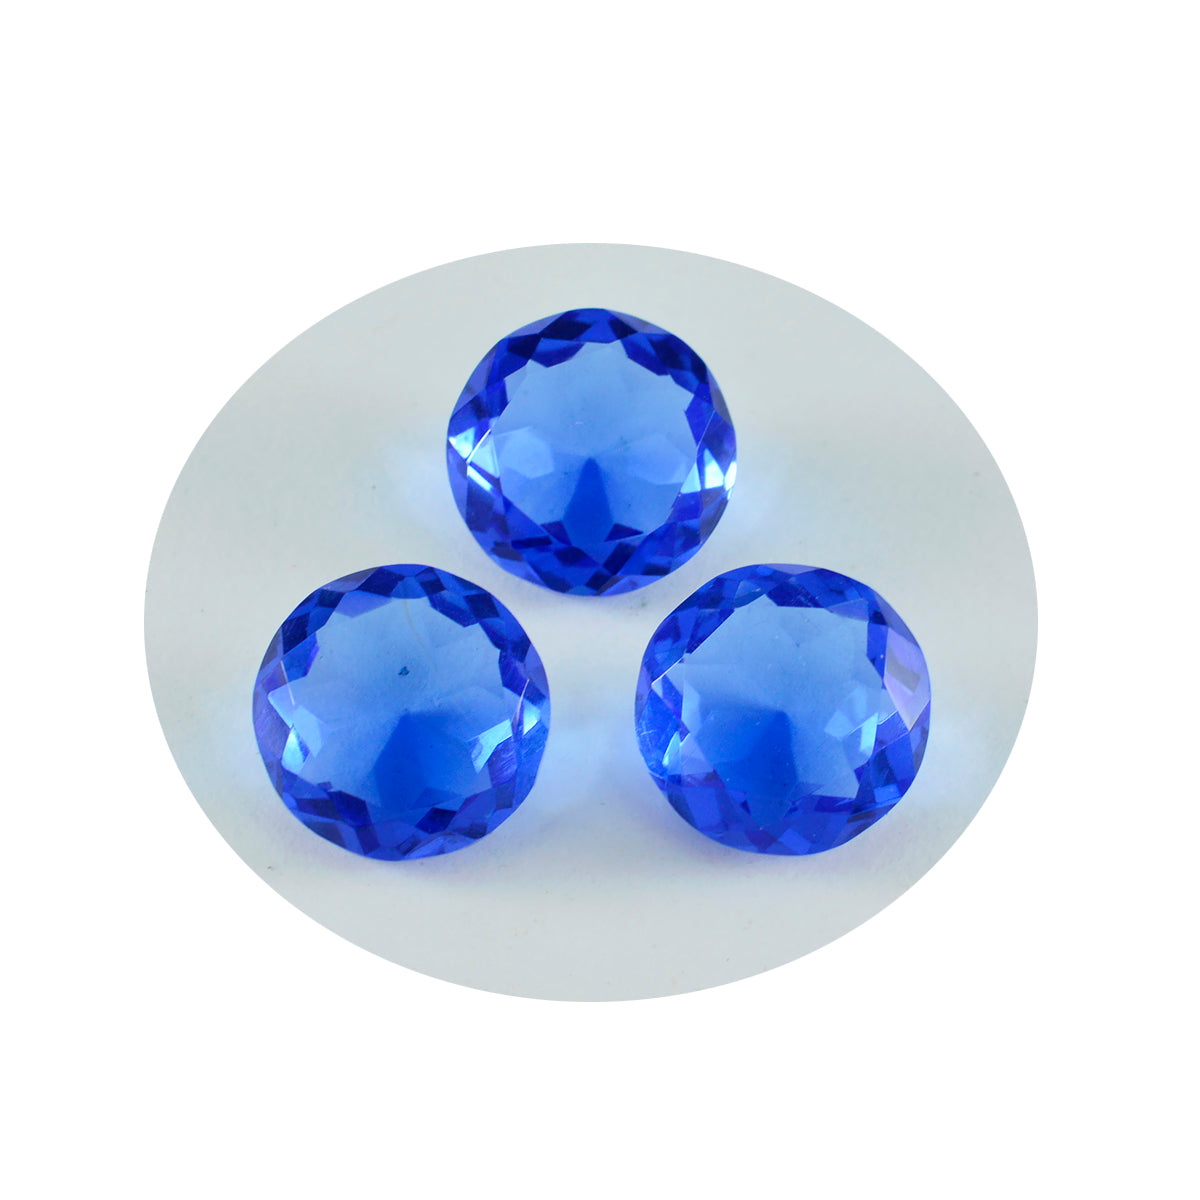 riyogems 1pc ブルー サファイア cz ファセット 14x14 mm ラウンド形状 aaa 品質宝石